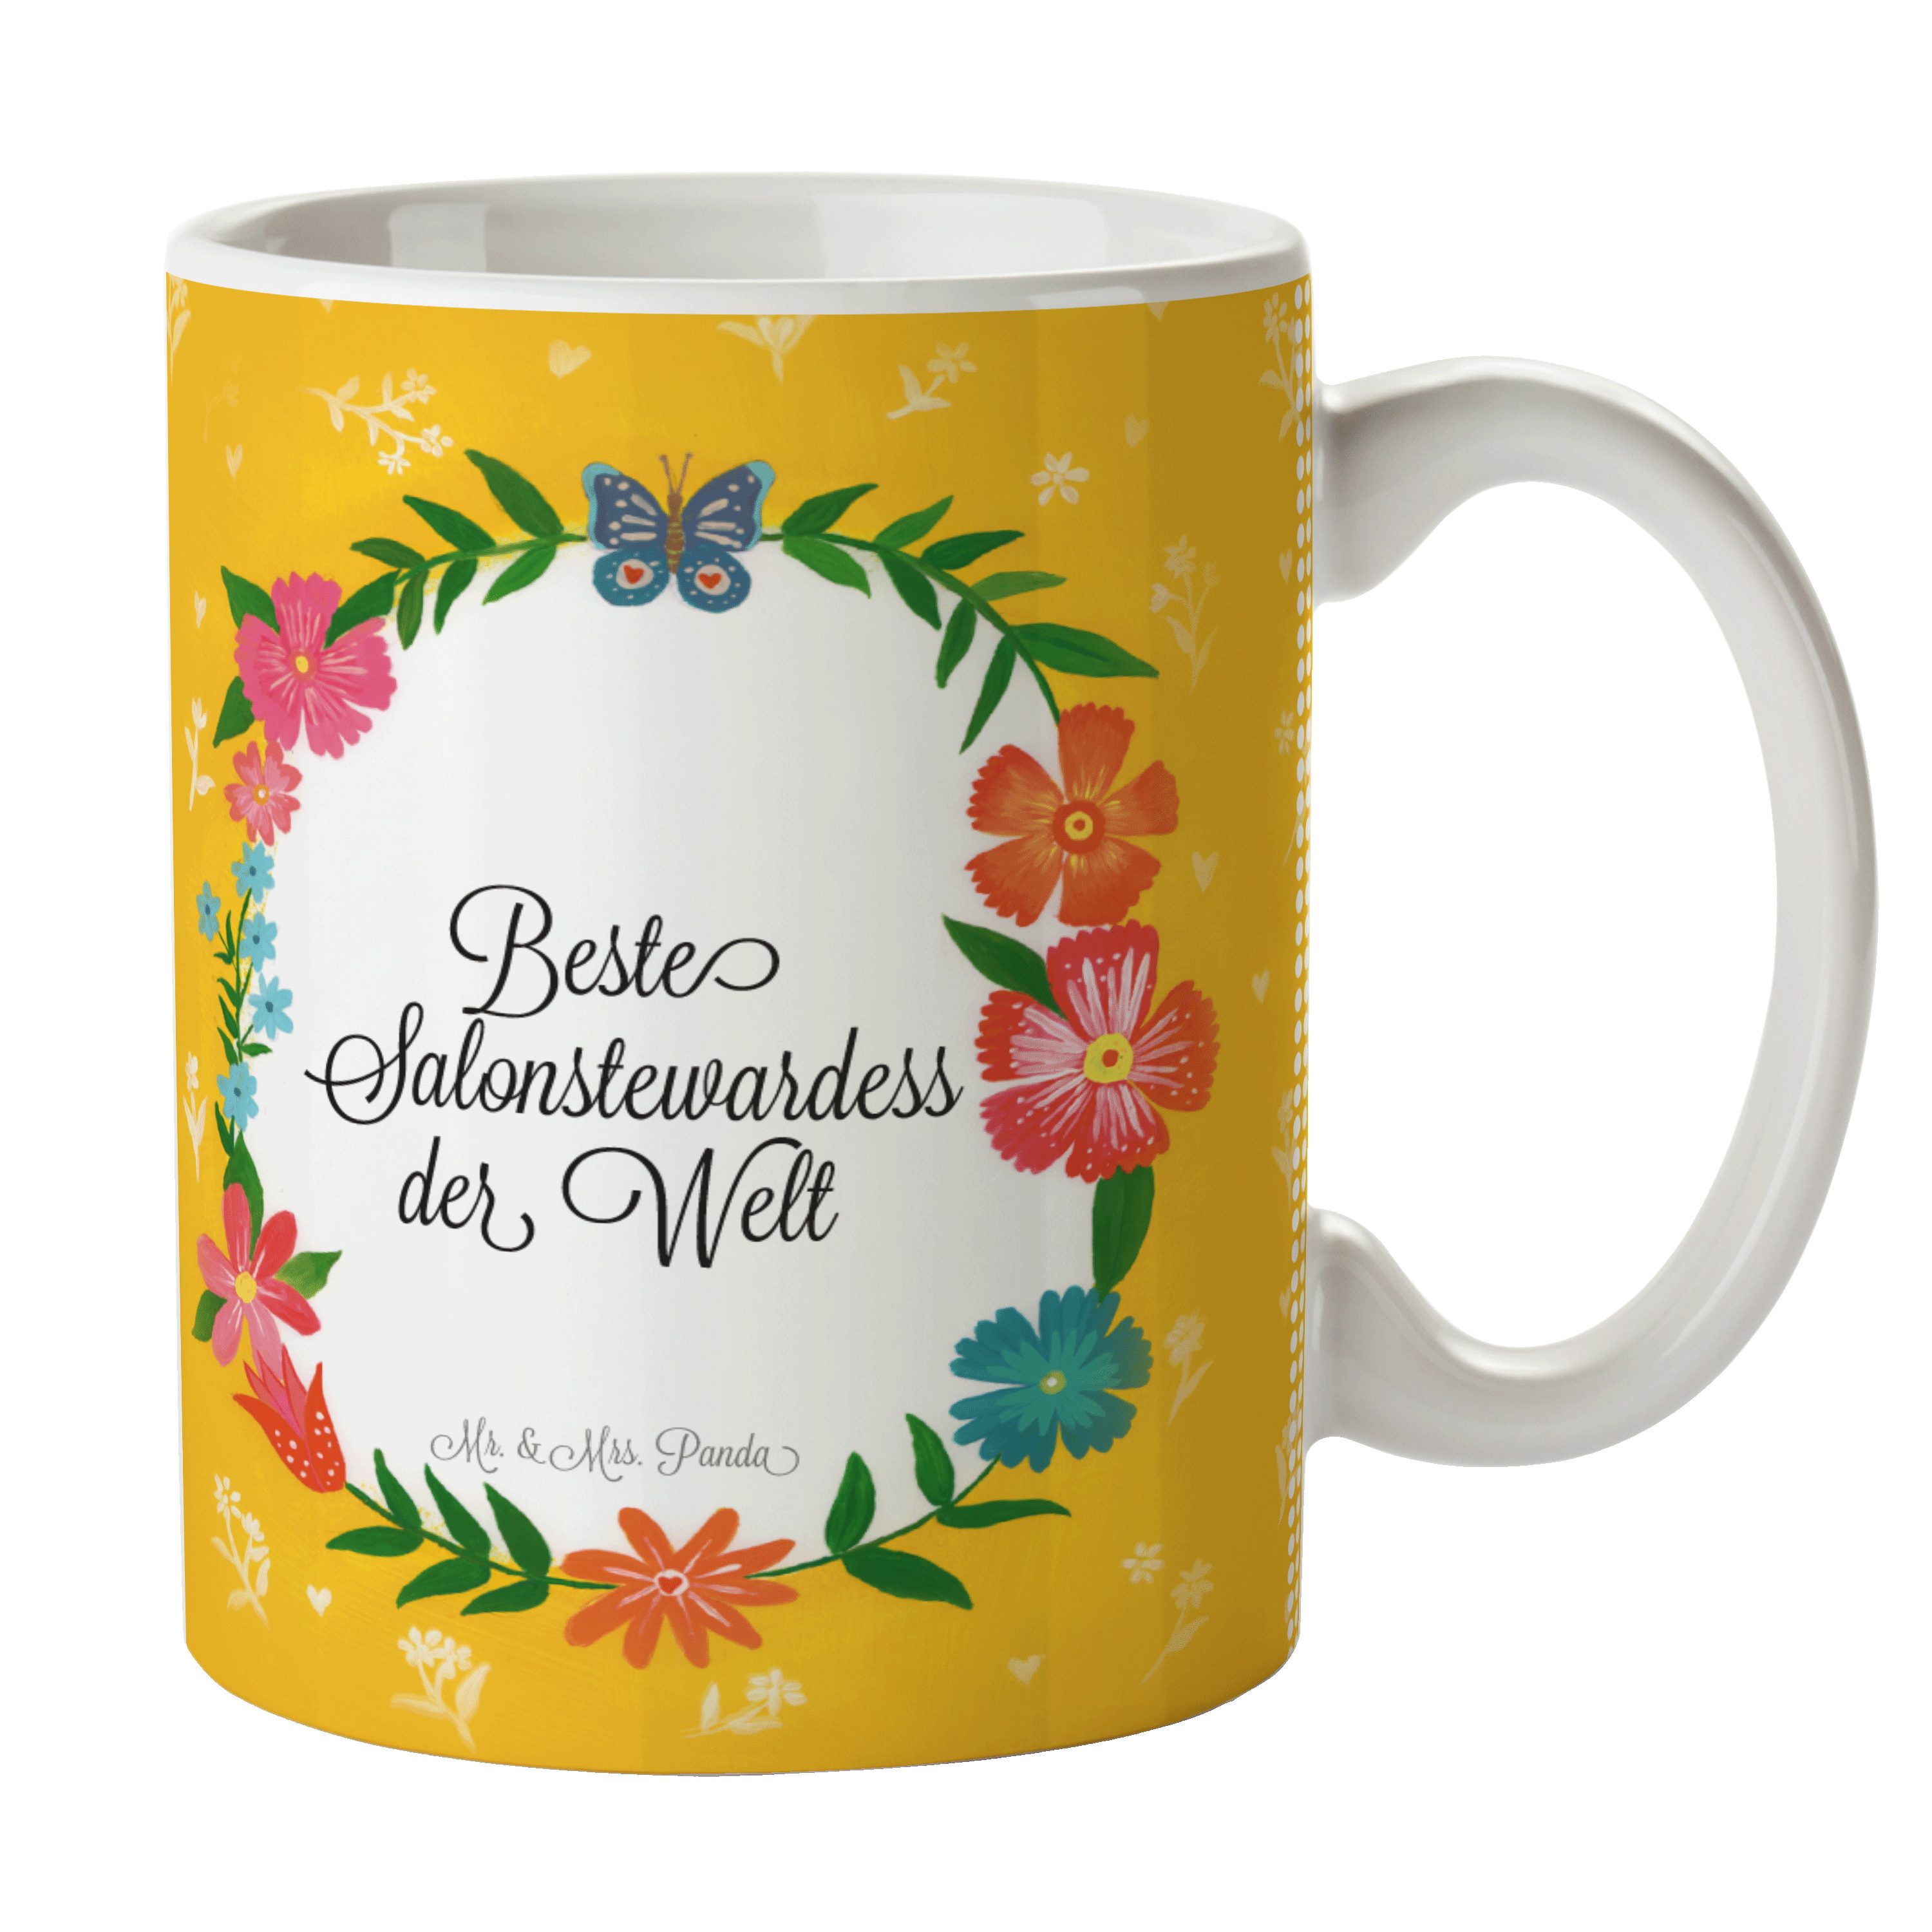 Mr. & Mrs. Panda Tasse Salonstewardess - Geschenk, Abschied, Teetasse, Kaffeetasse, Becher, Keramik